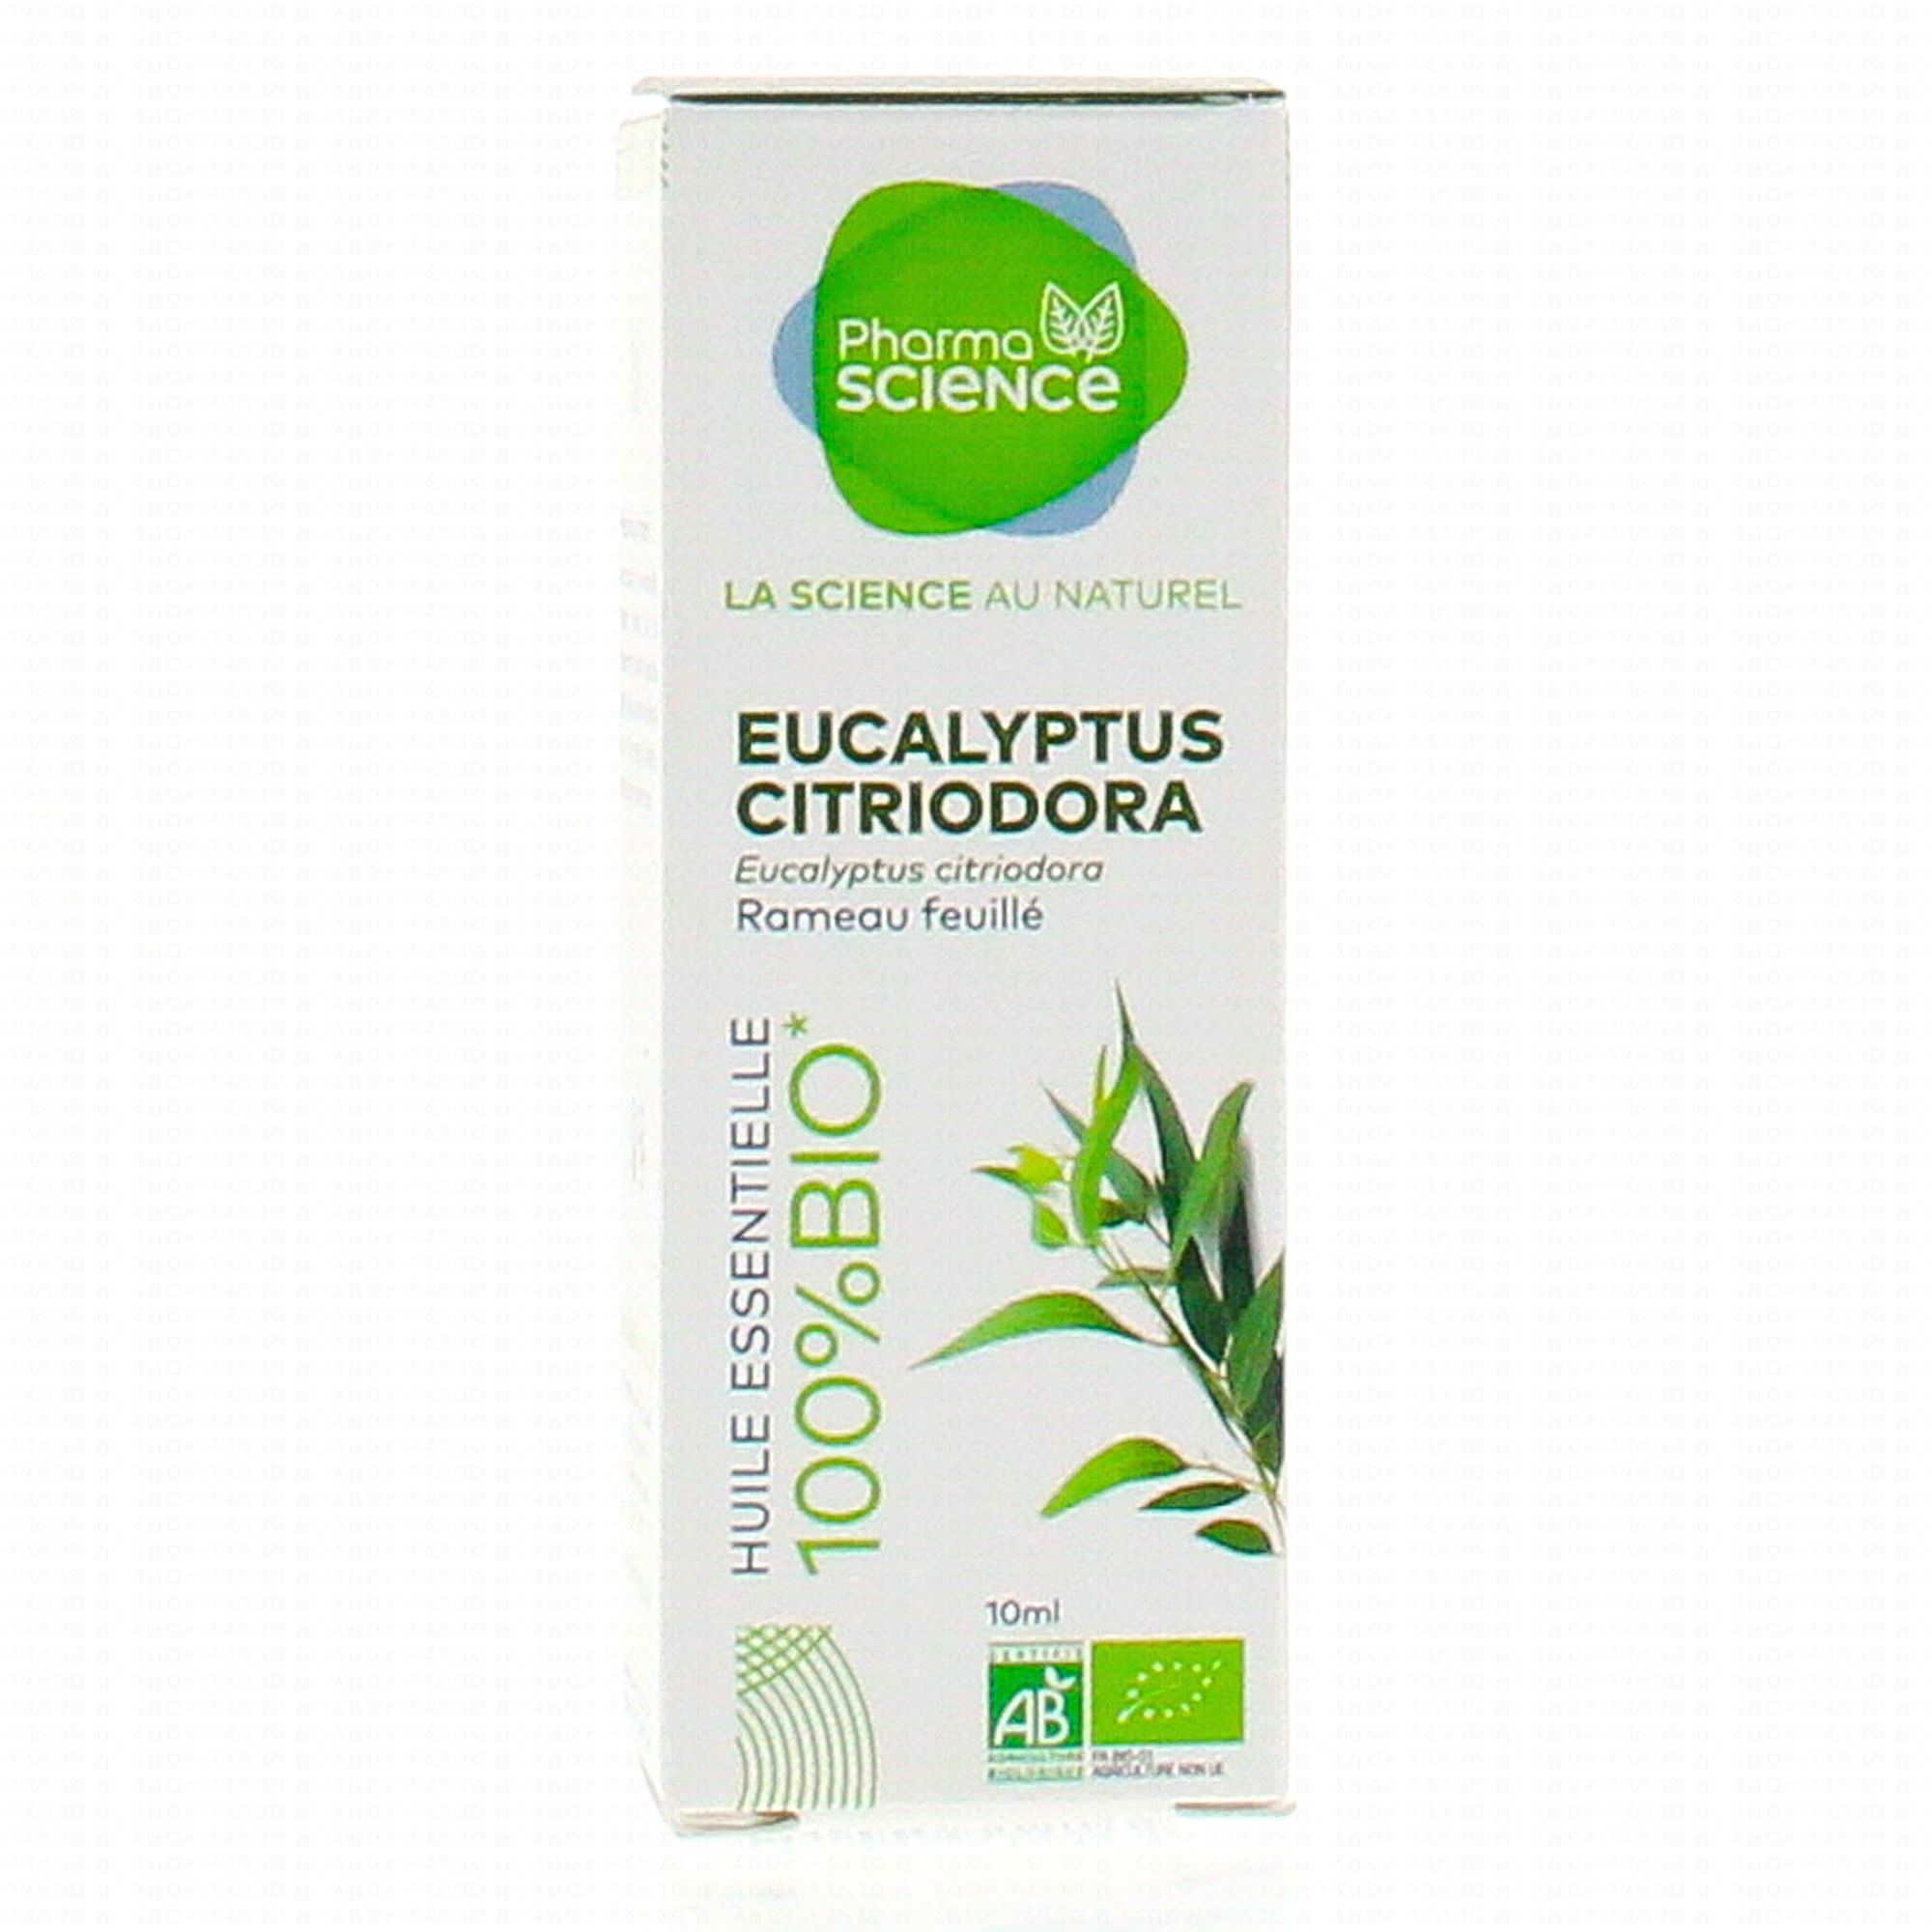 Huile essentielle d'Eucalyptus citronné : le flacon de 10 ml à